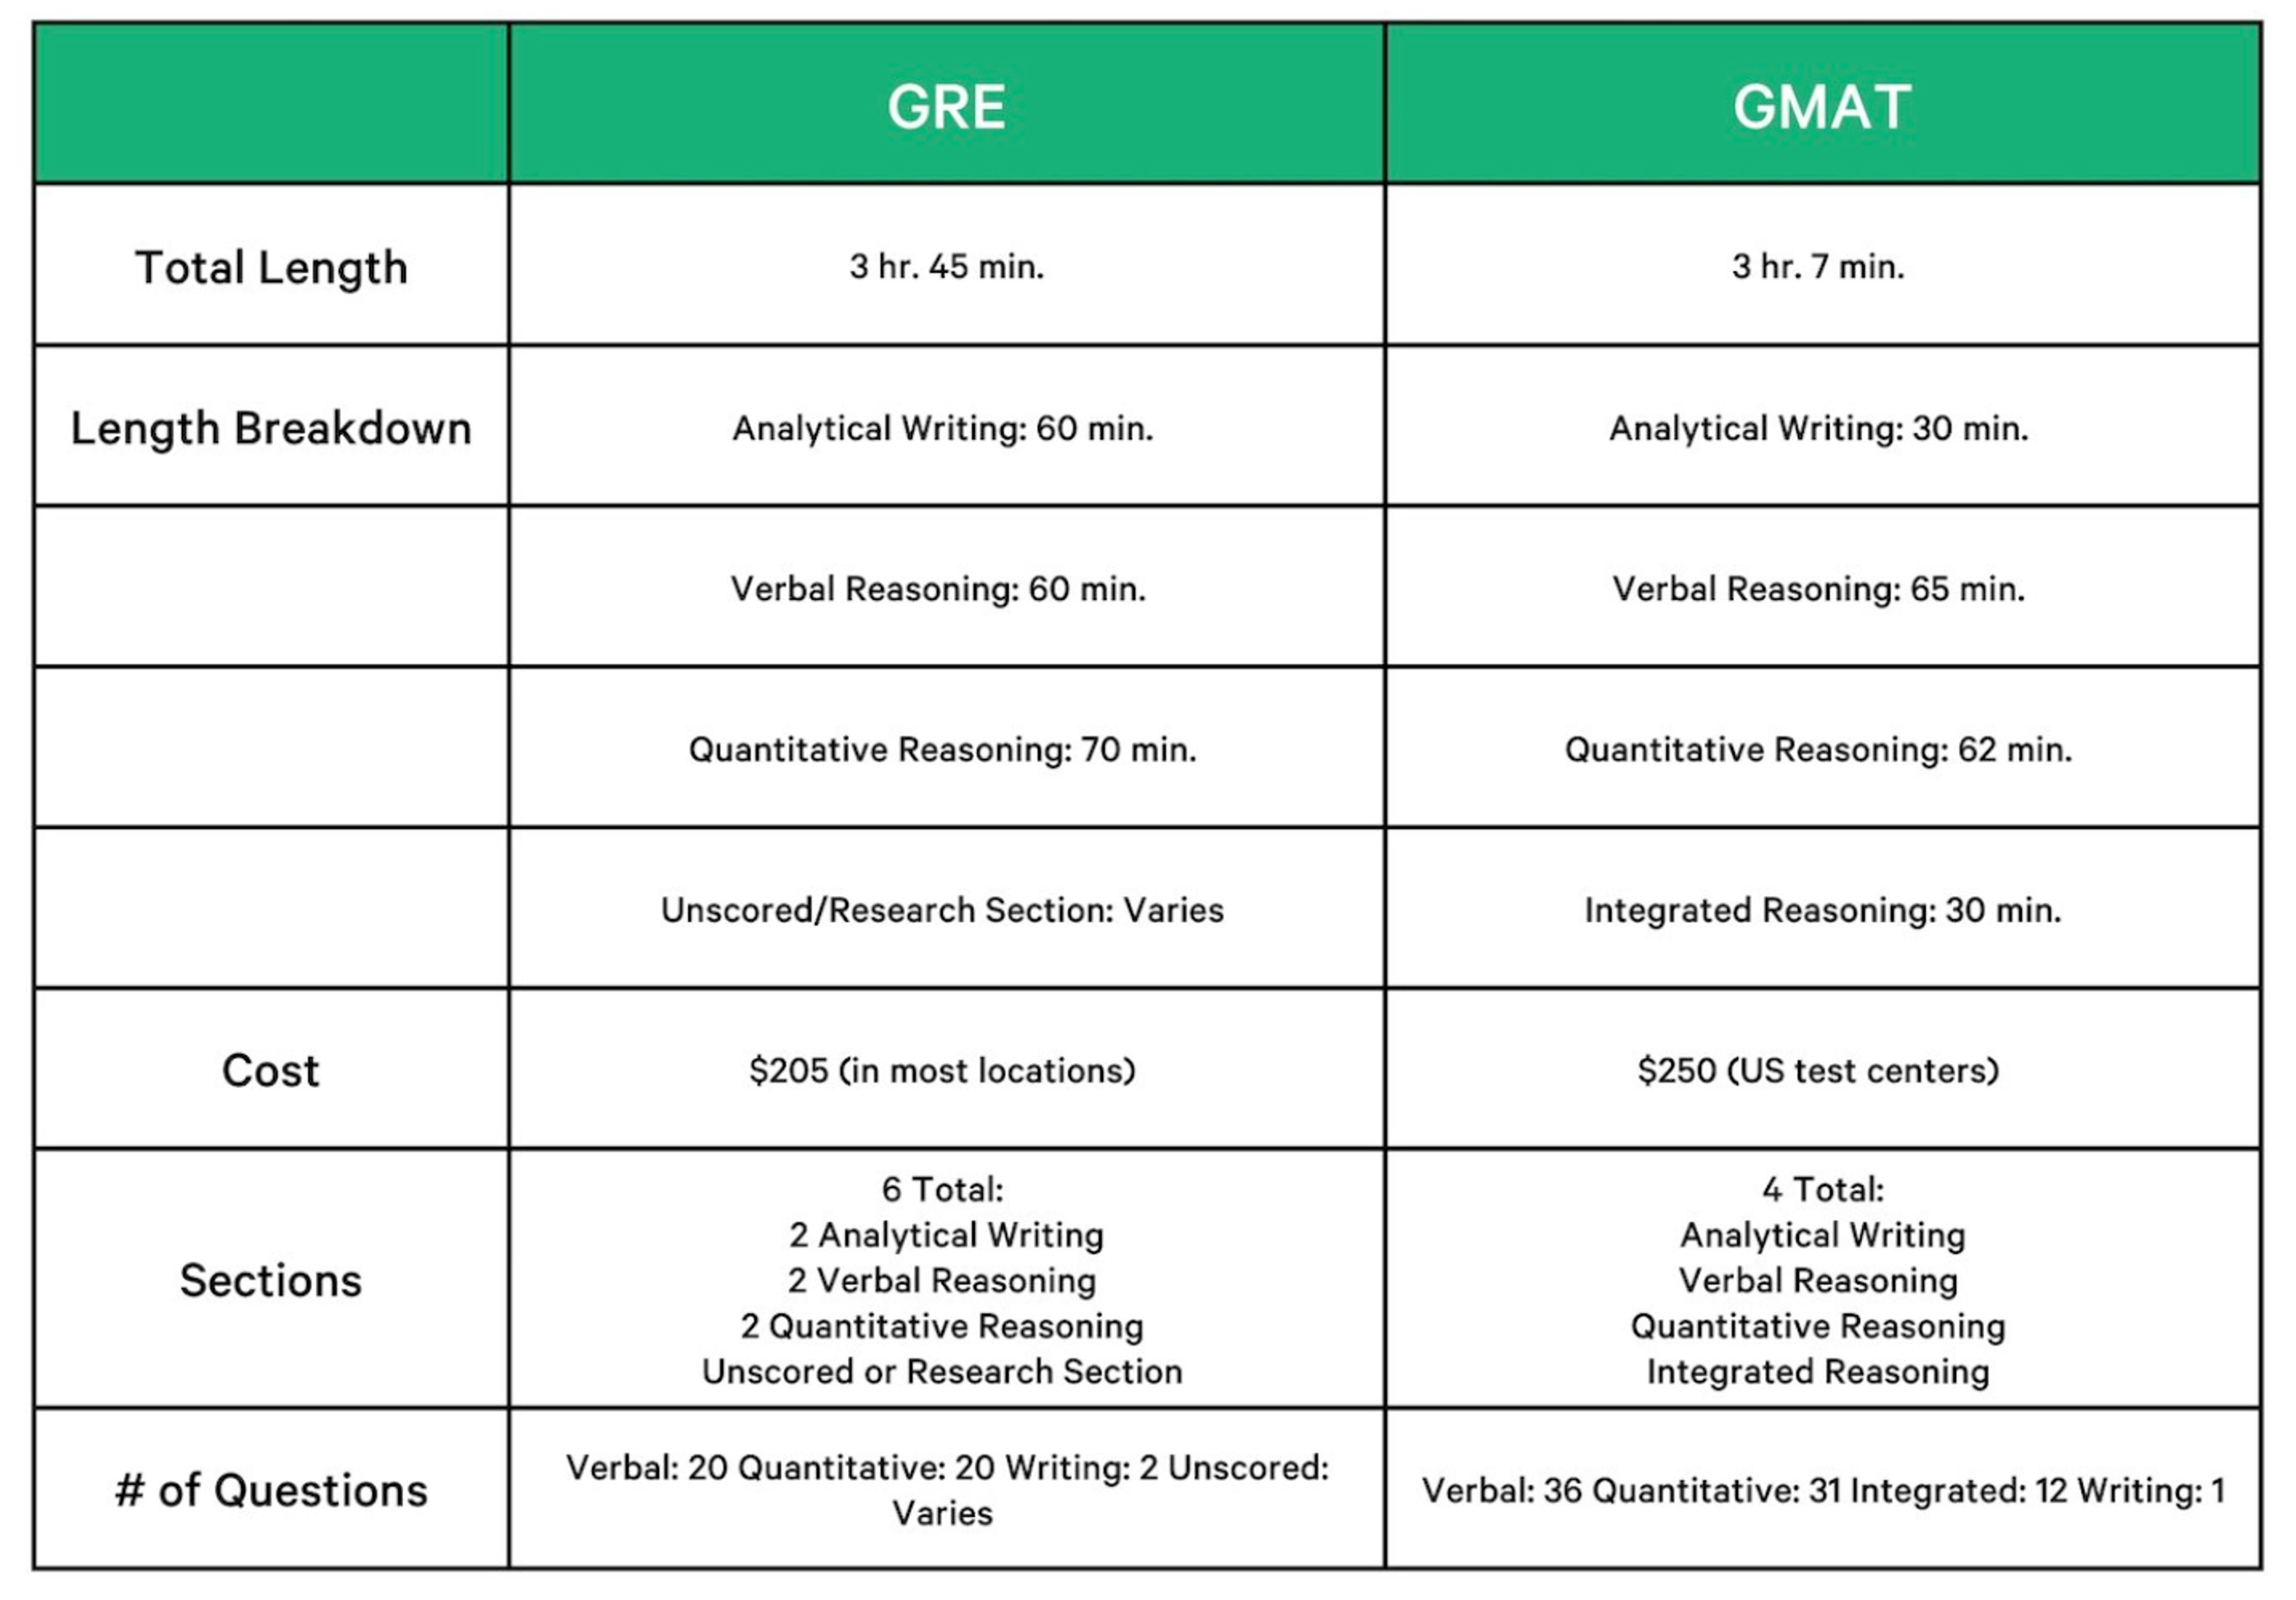 Buy GMAT Official Guide Quantitative Review 2.. in Bulk